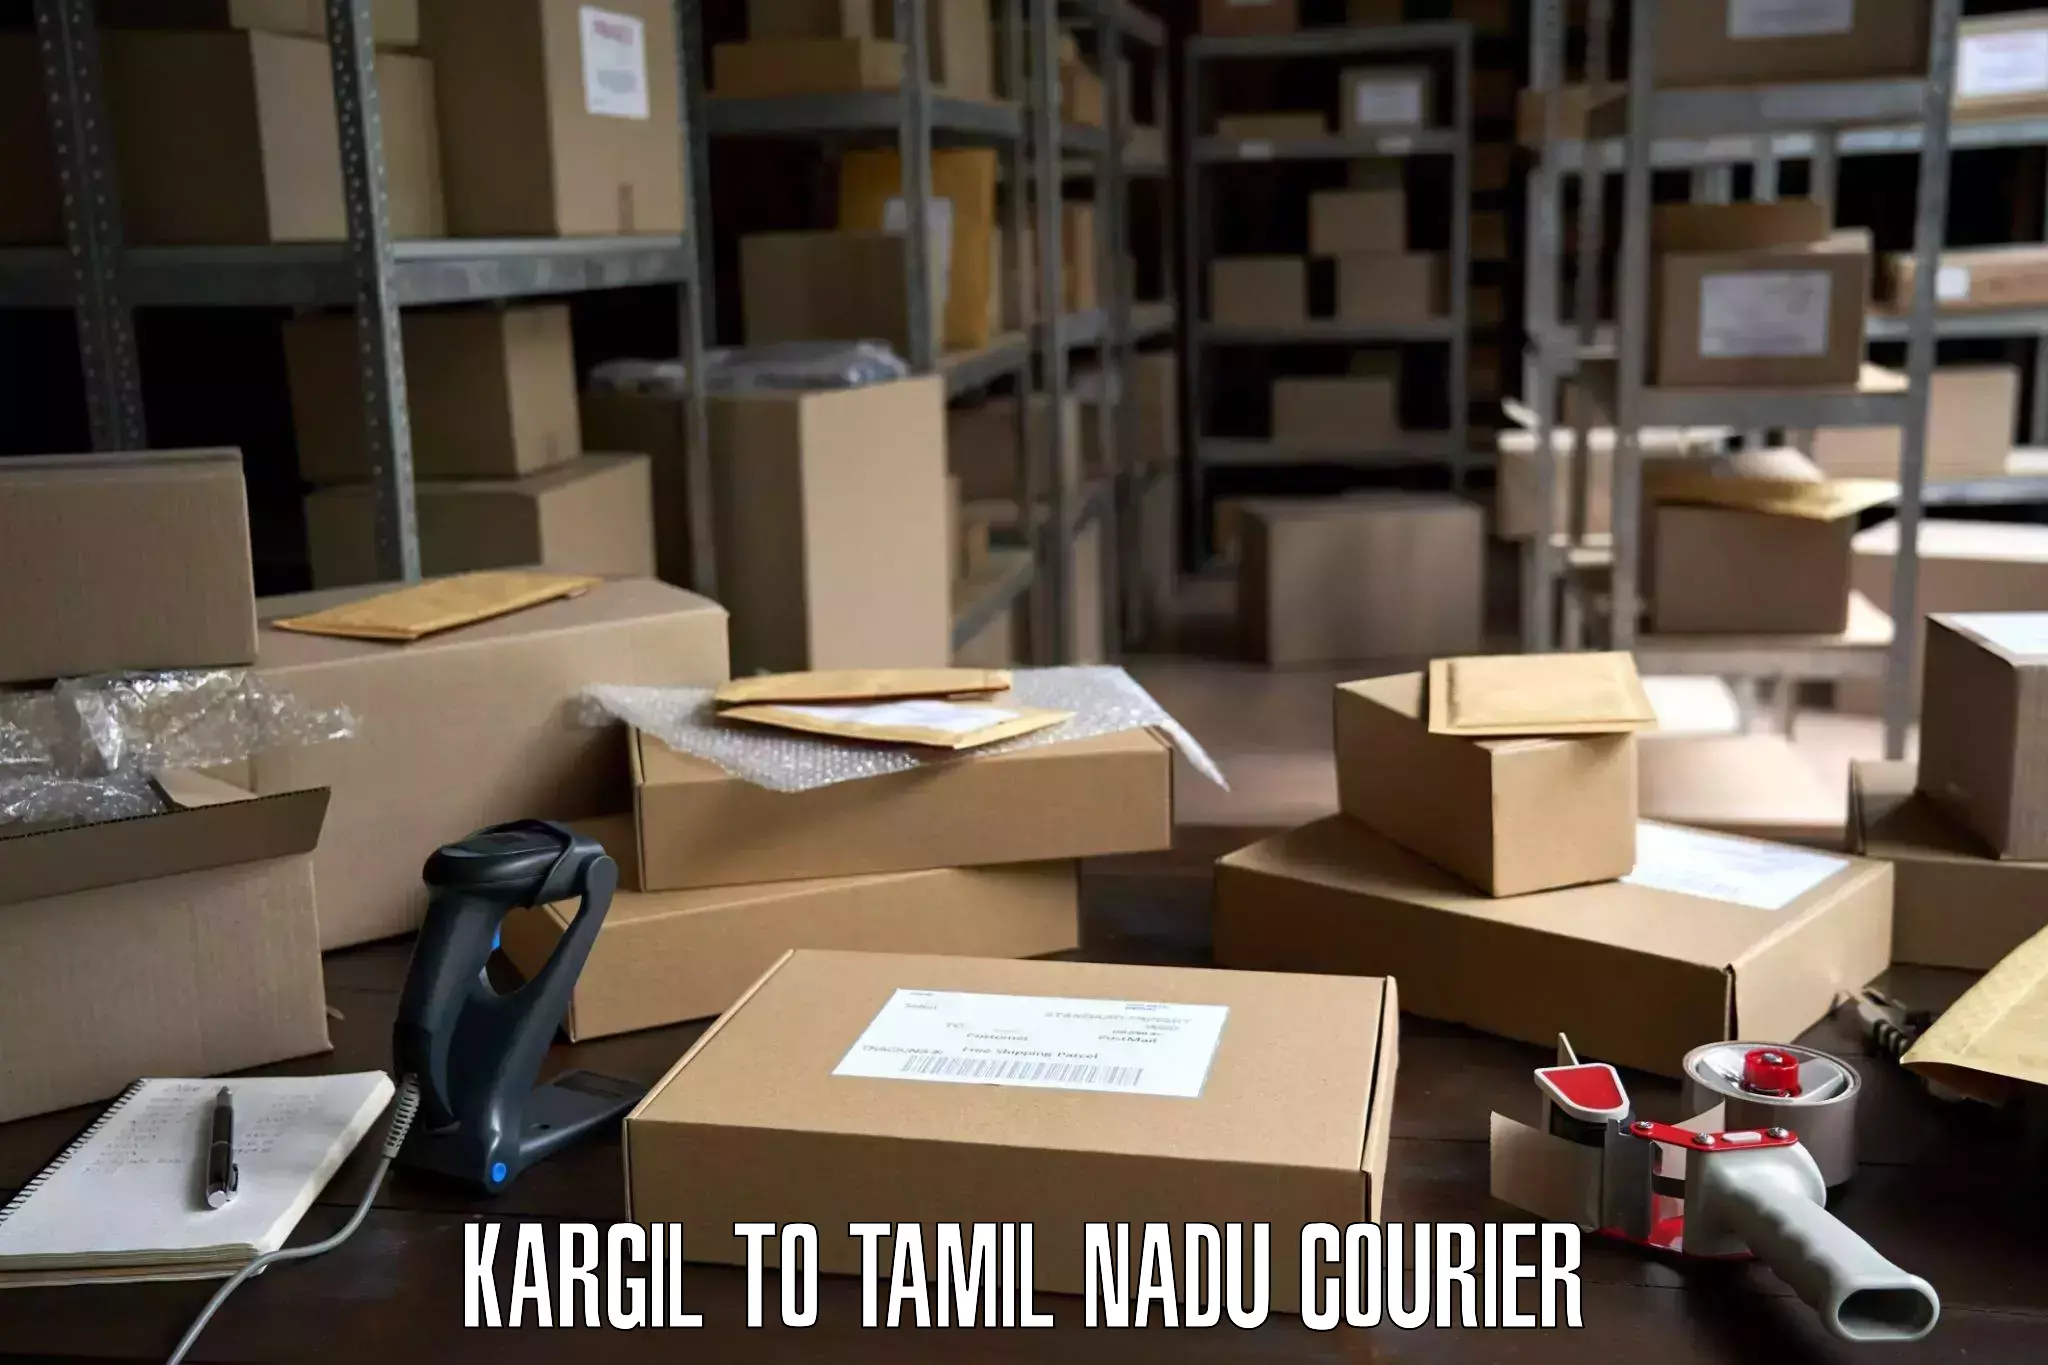 Moving and packing experts Kargil to Tirukalukundram